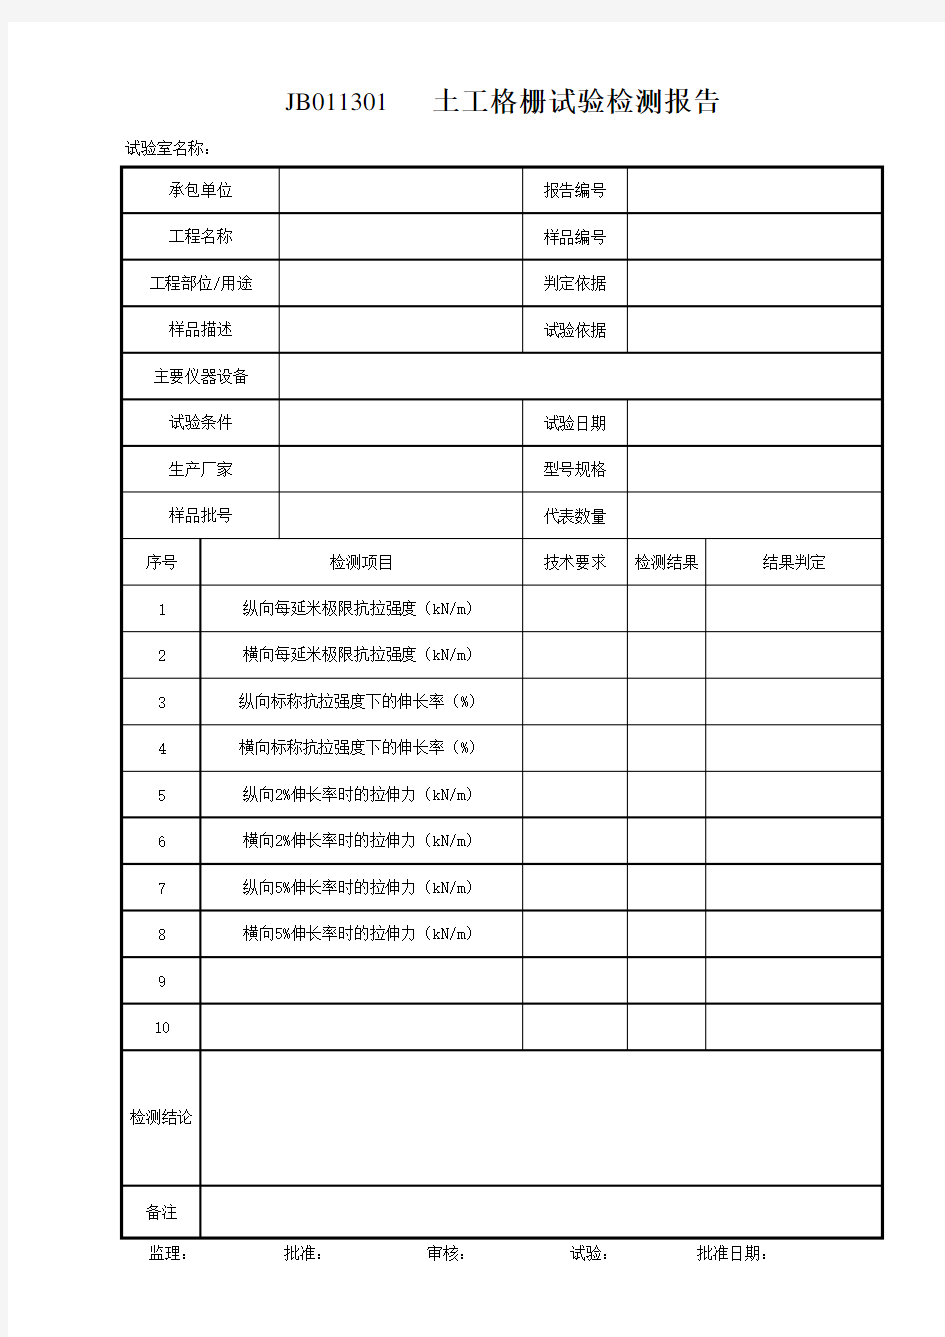 云南省公路工程建设用表标准化指南(试行版)13土工合成材料